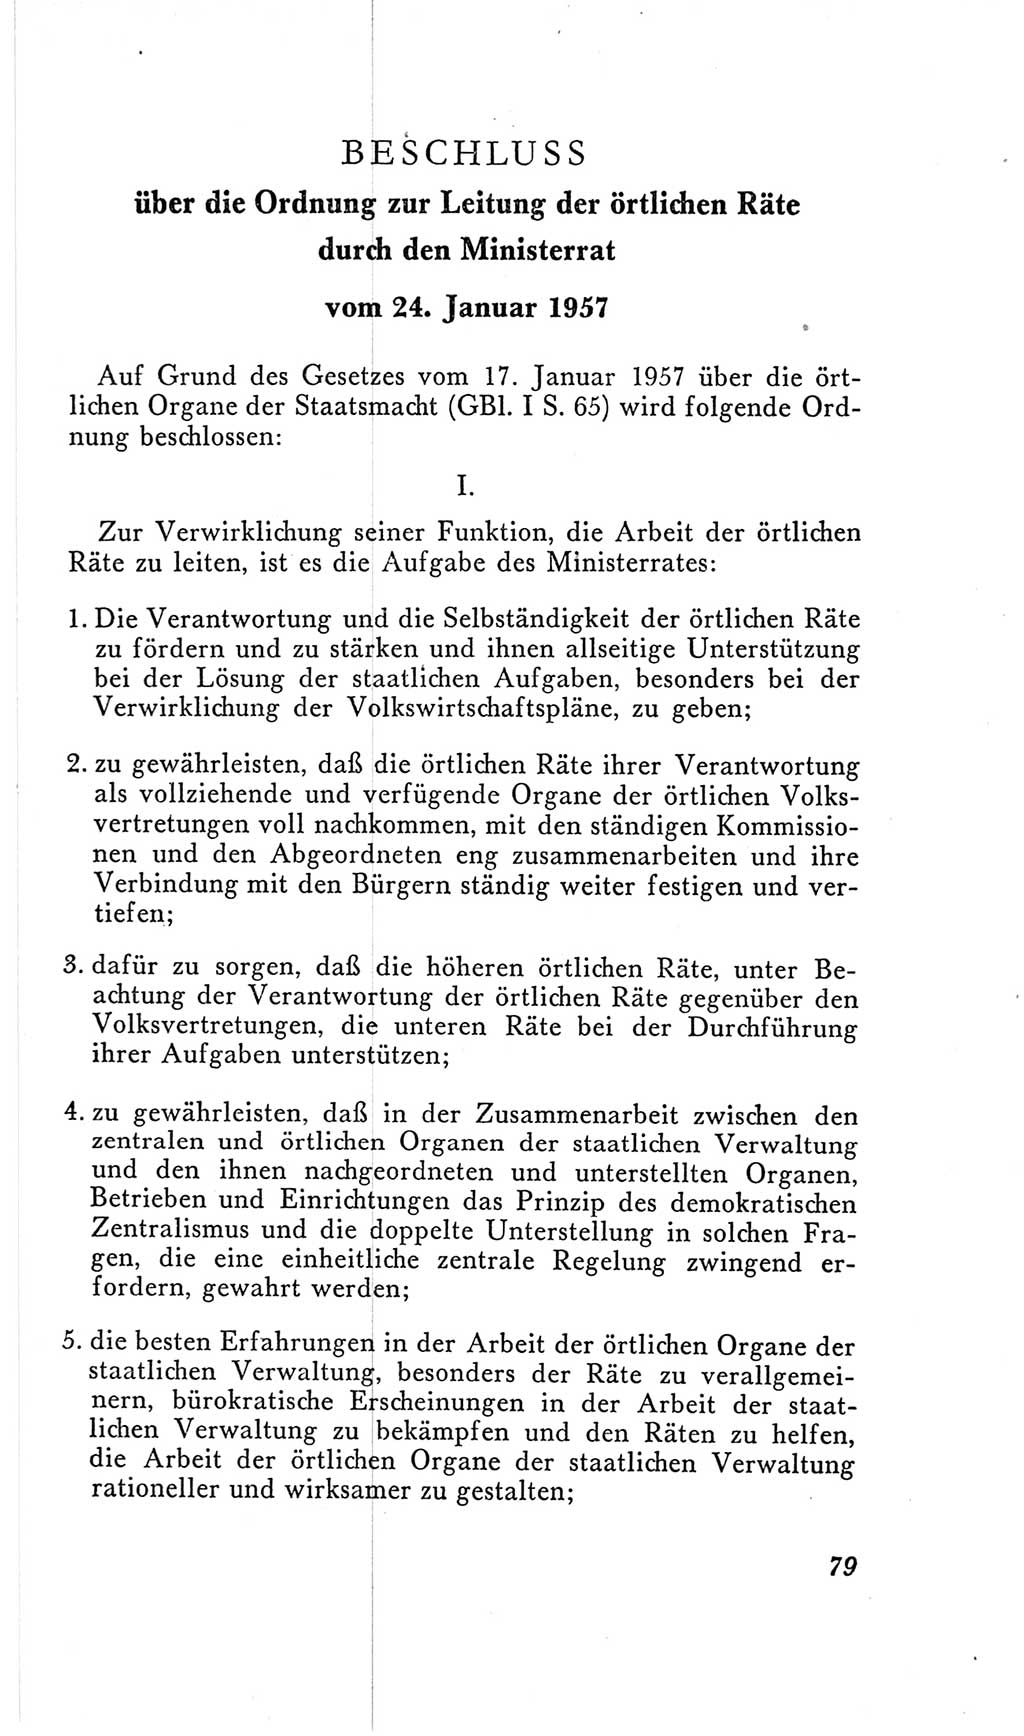 Handbuch der Volkskammer (VK) der Deutschen Demokratischen Republik (DDR), 2. Wahlperiode 1954-1958, Seite 79 (Hdb. VK. DDR, 2. WP. 1954-1958, S. 79)